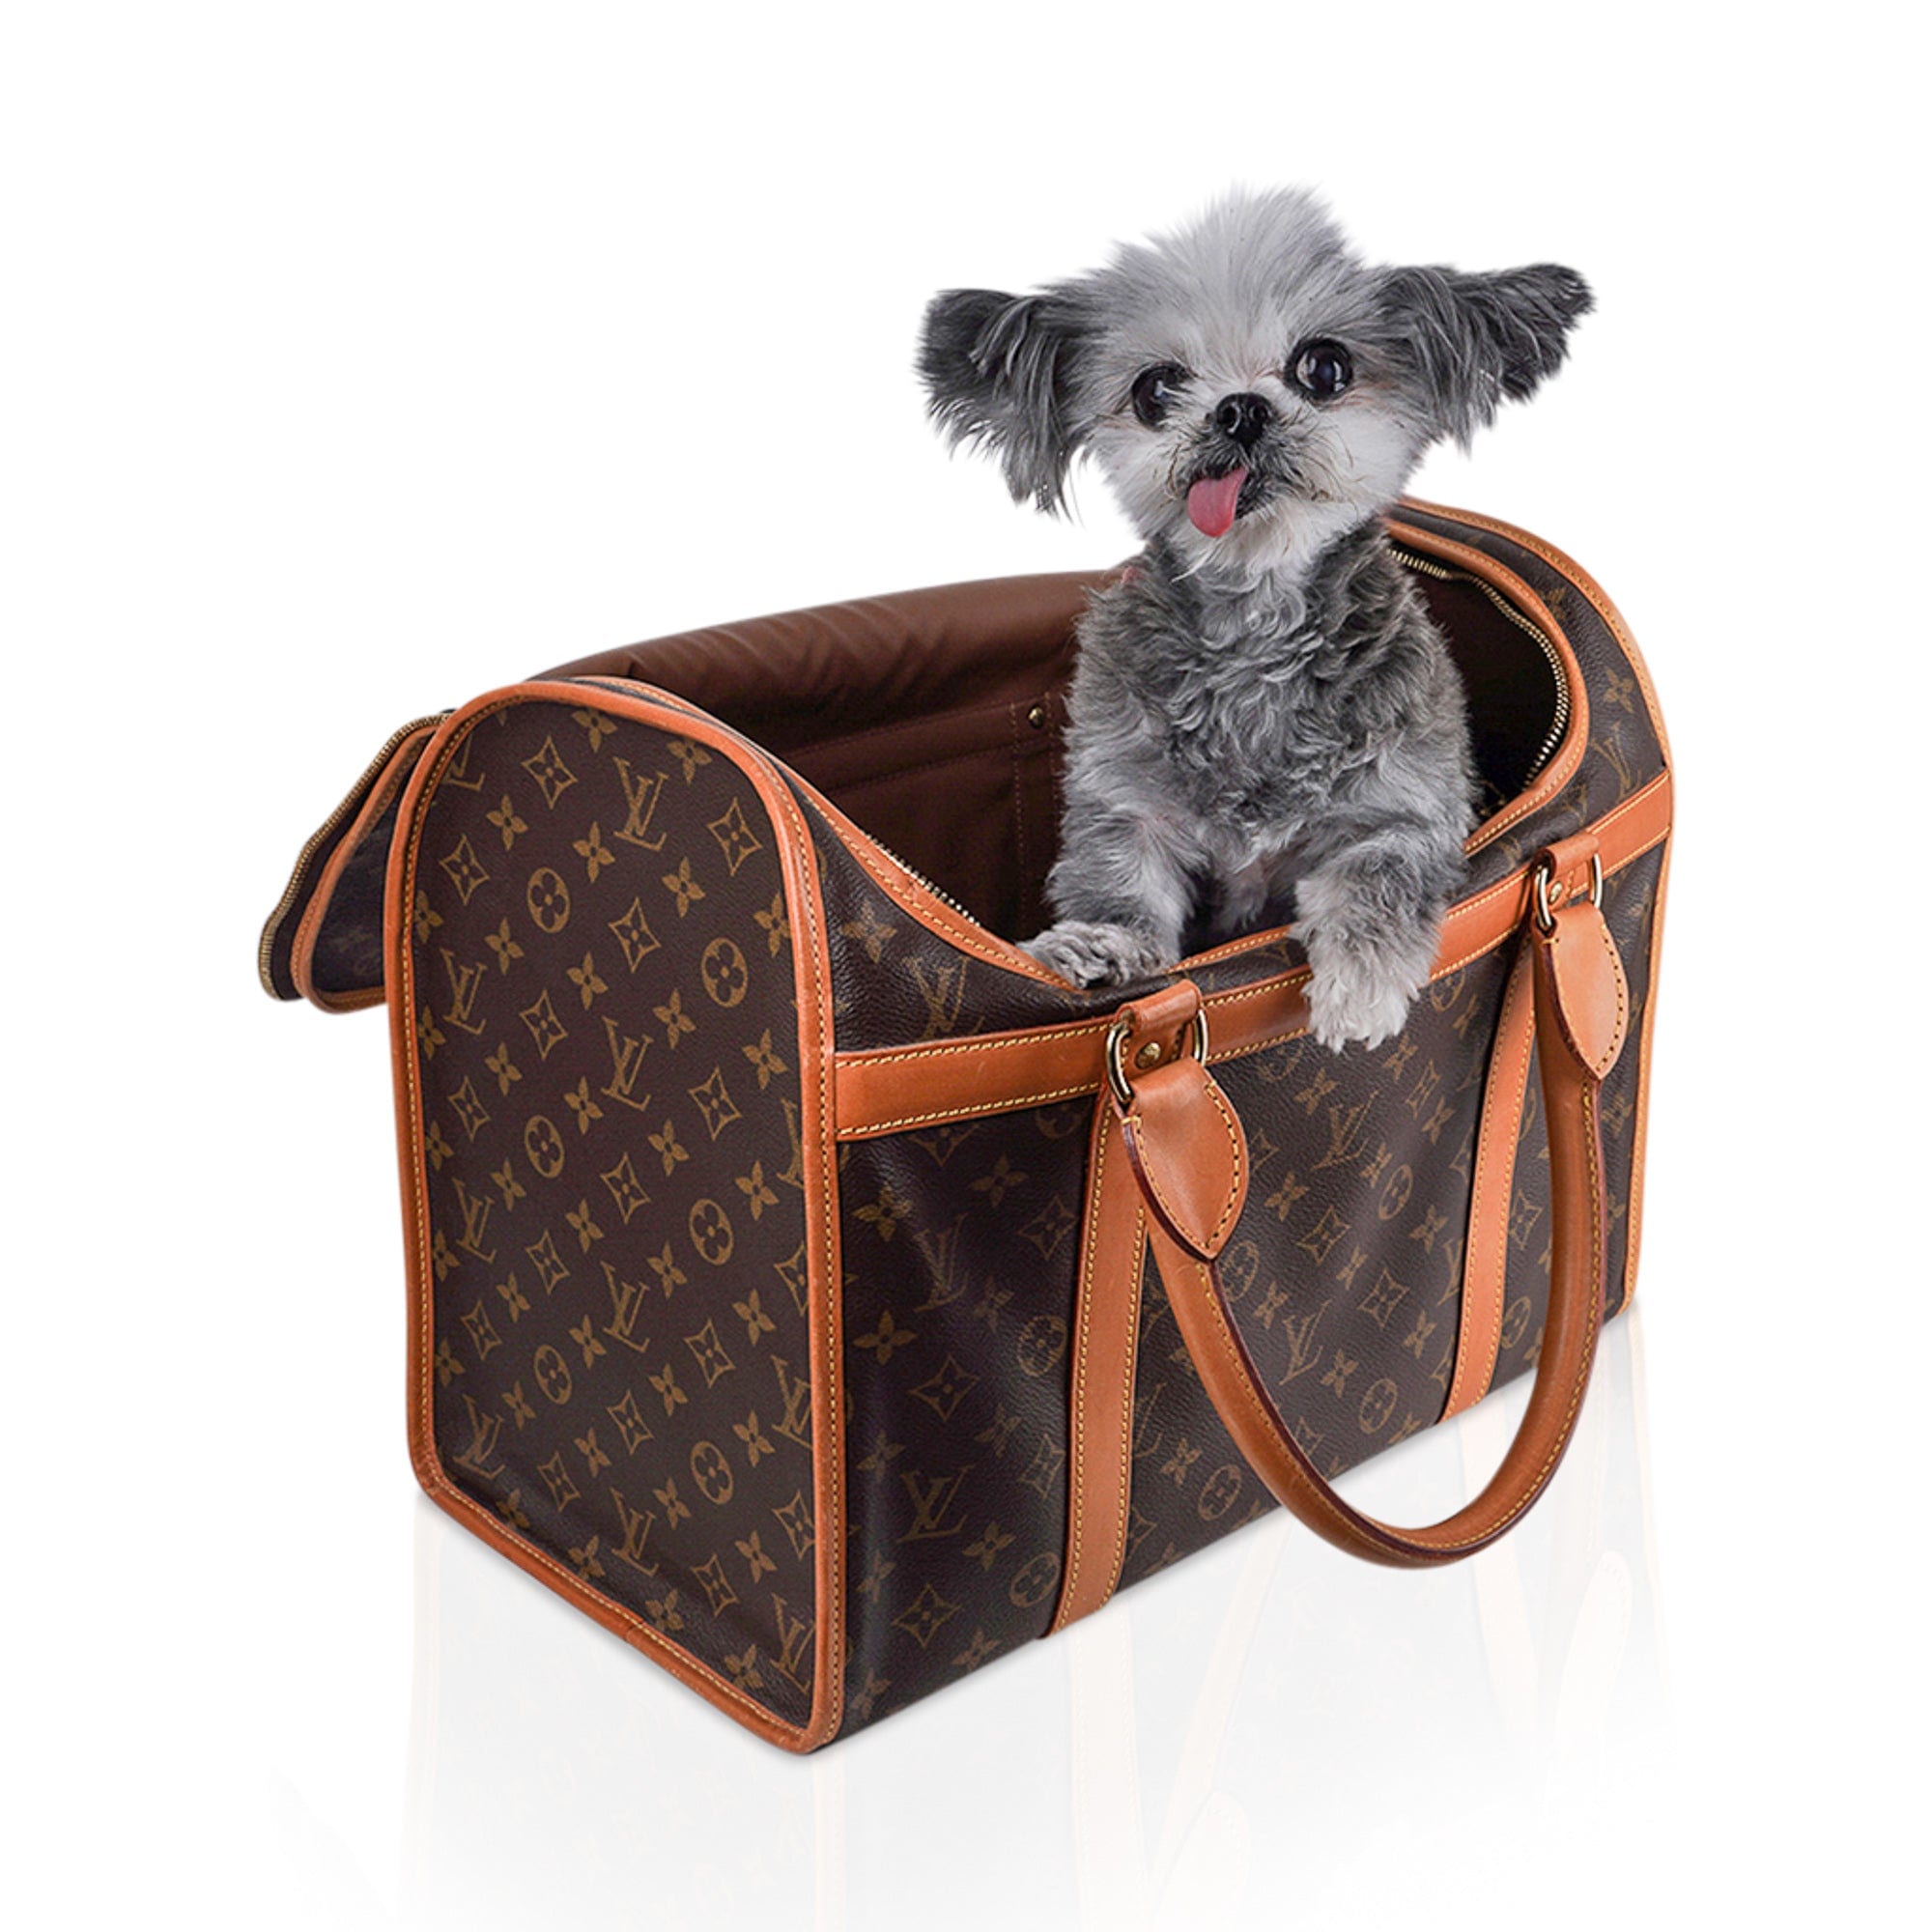 Stylish Louis Vuitton Pet Carrier - The Rich Times  Louis vuitton dog  carrier, Louis vuitton pet carrier, Pet carriers